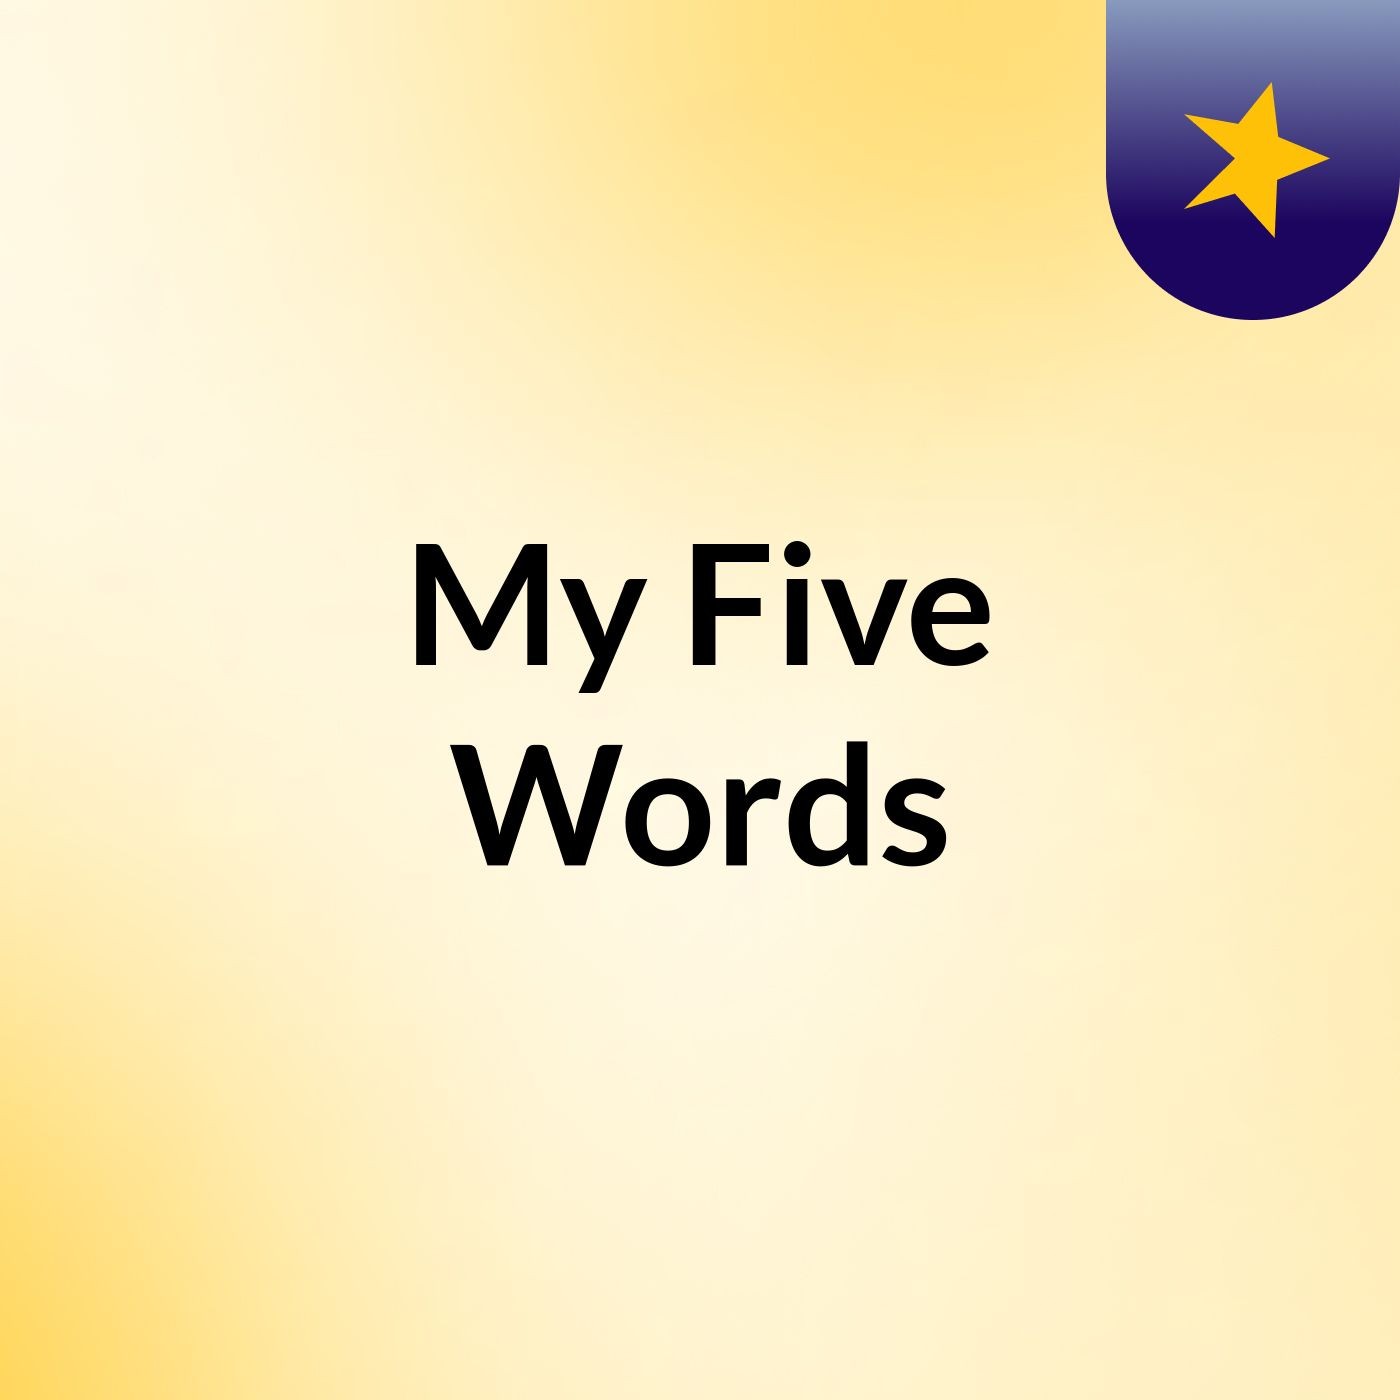 My Five Words